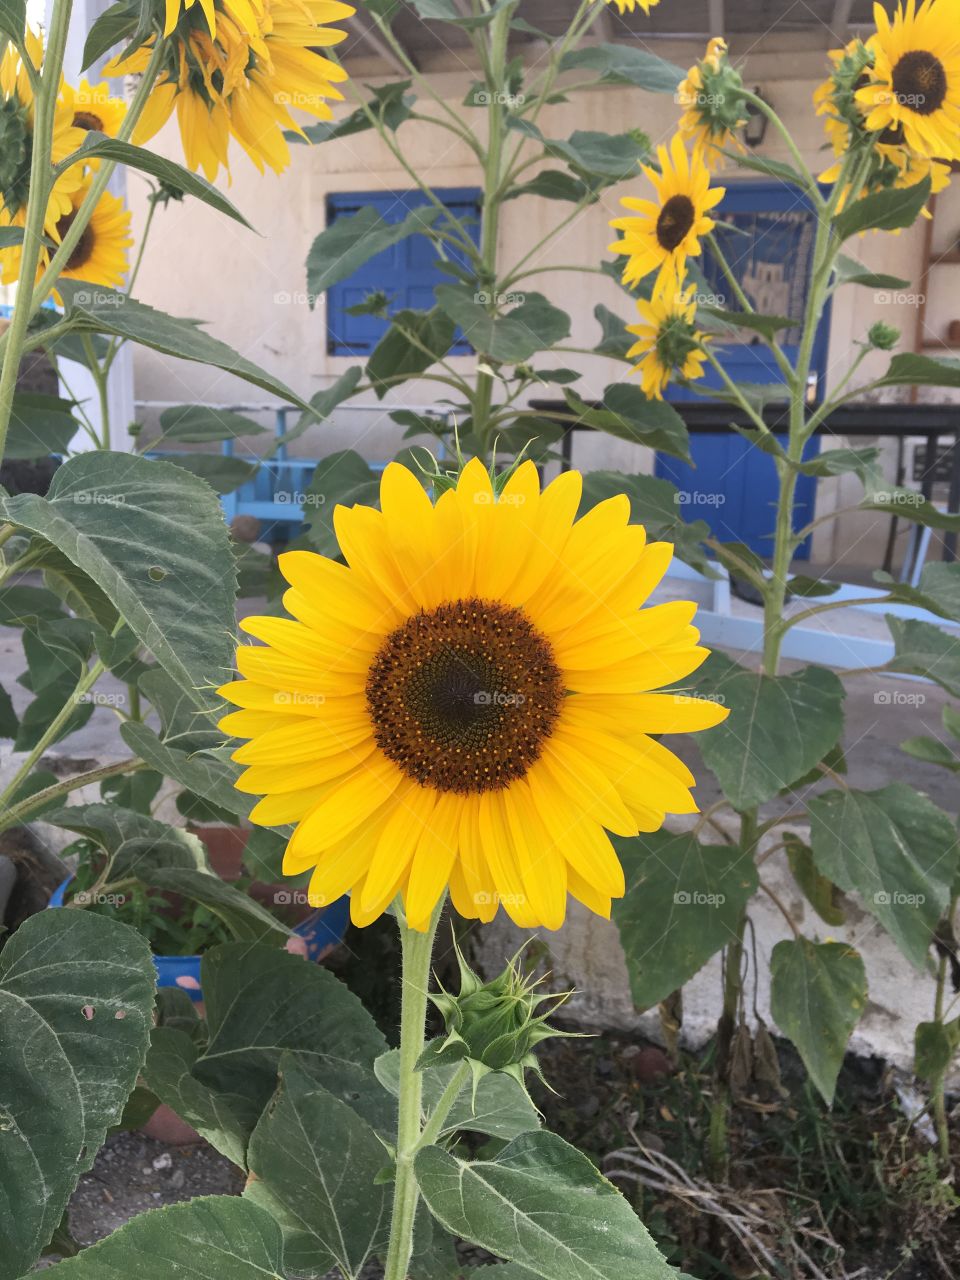 Sunflowers in santorini 